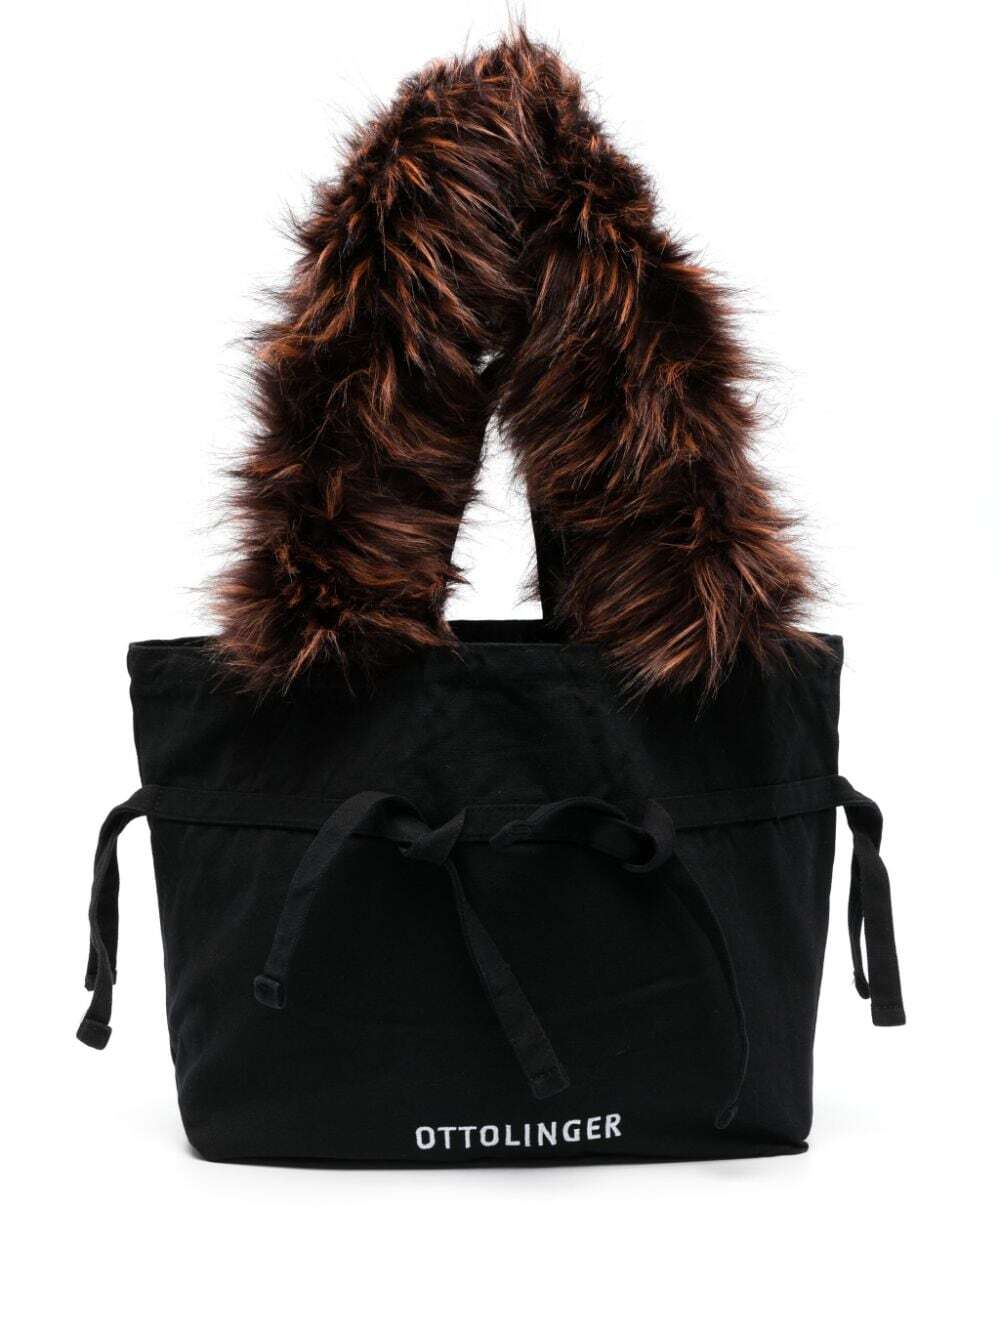 Ottolinger logo-embroidered canvas shoulder bag - Black